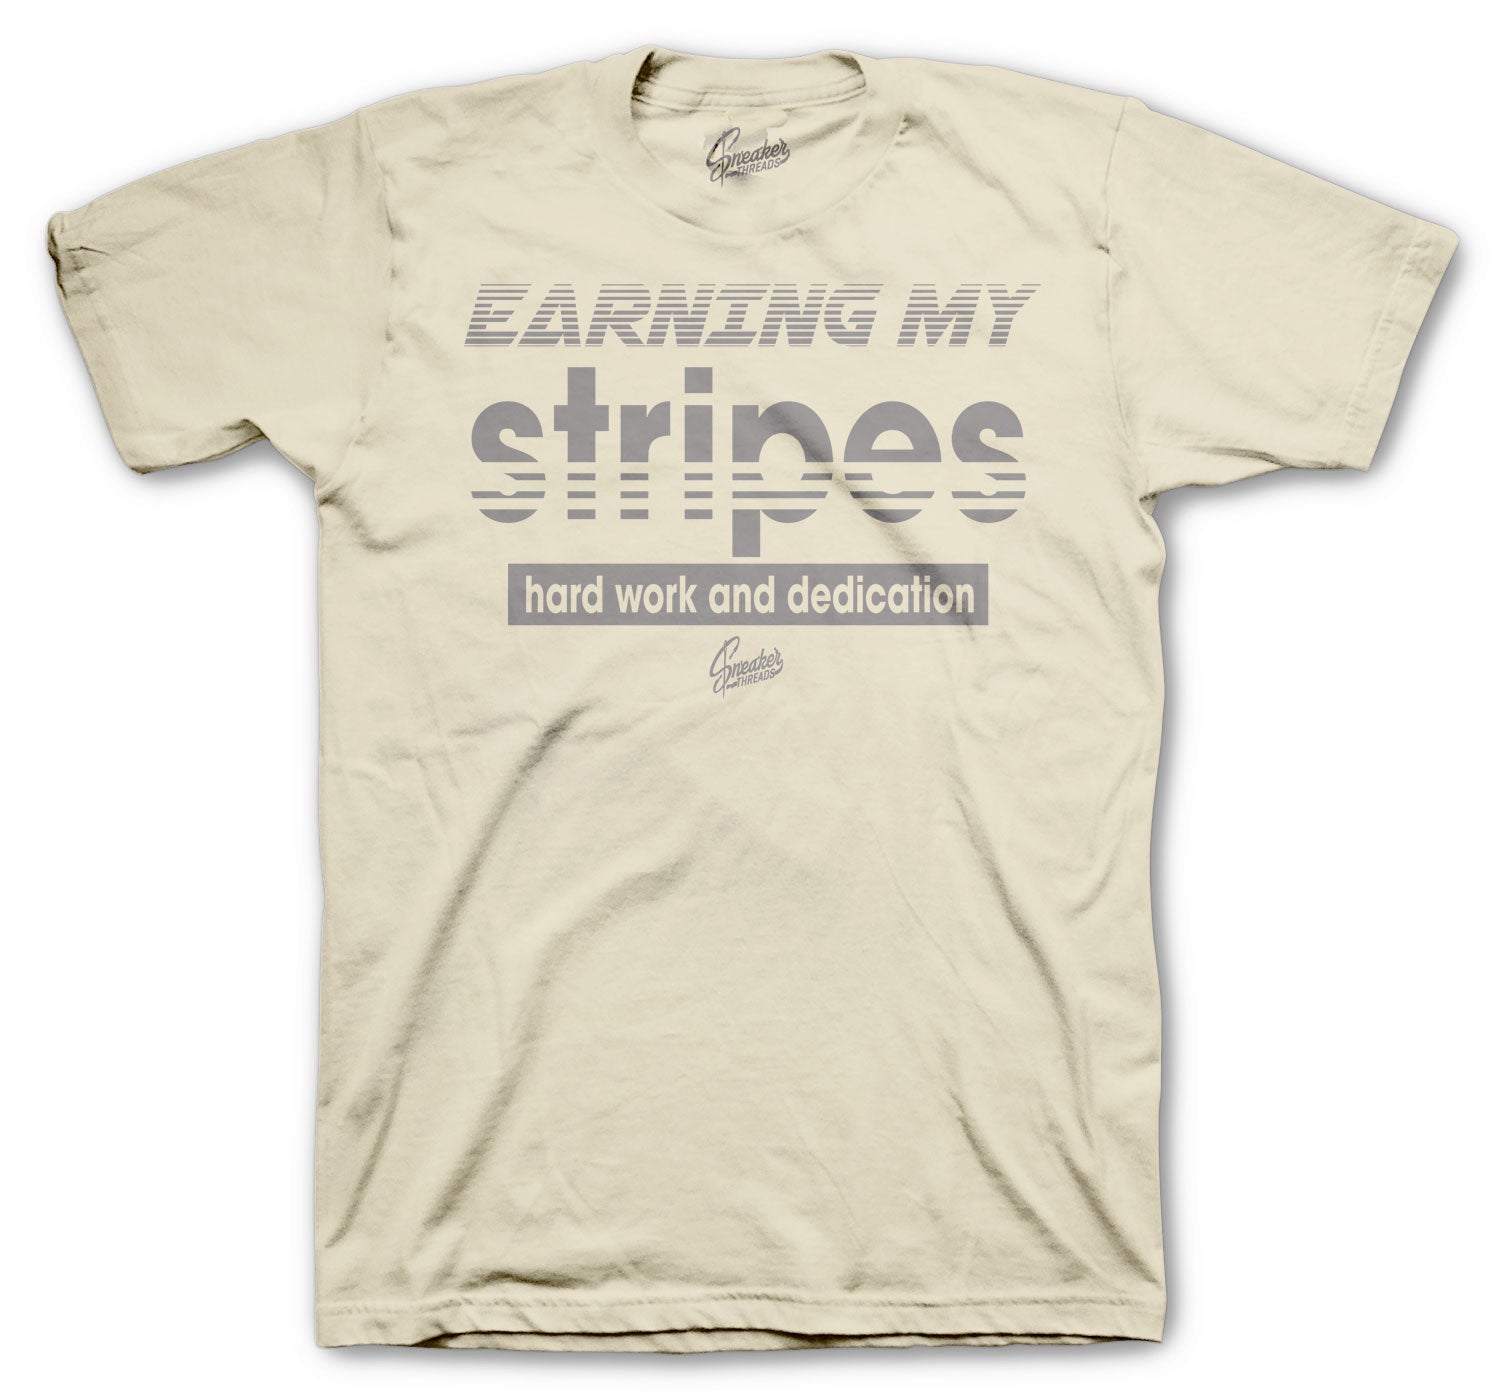 Natural Shirt - Earnong Stripes - Natural